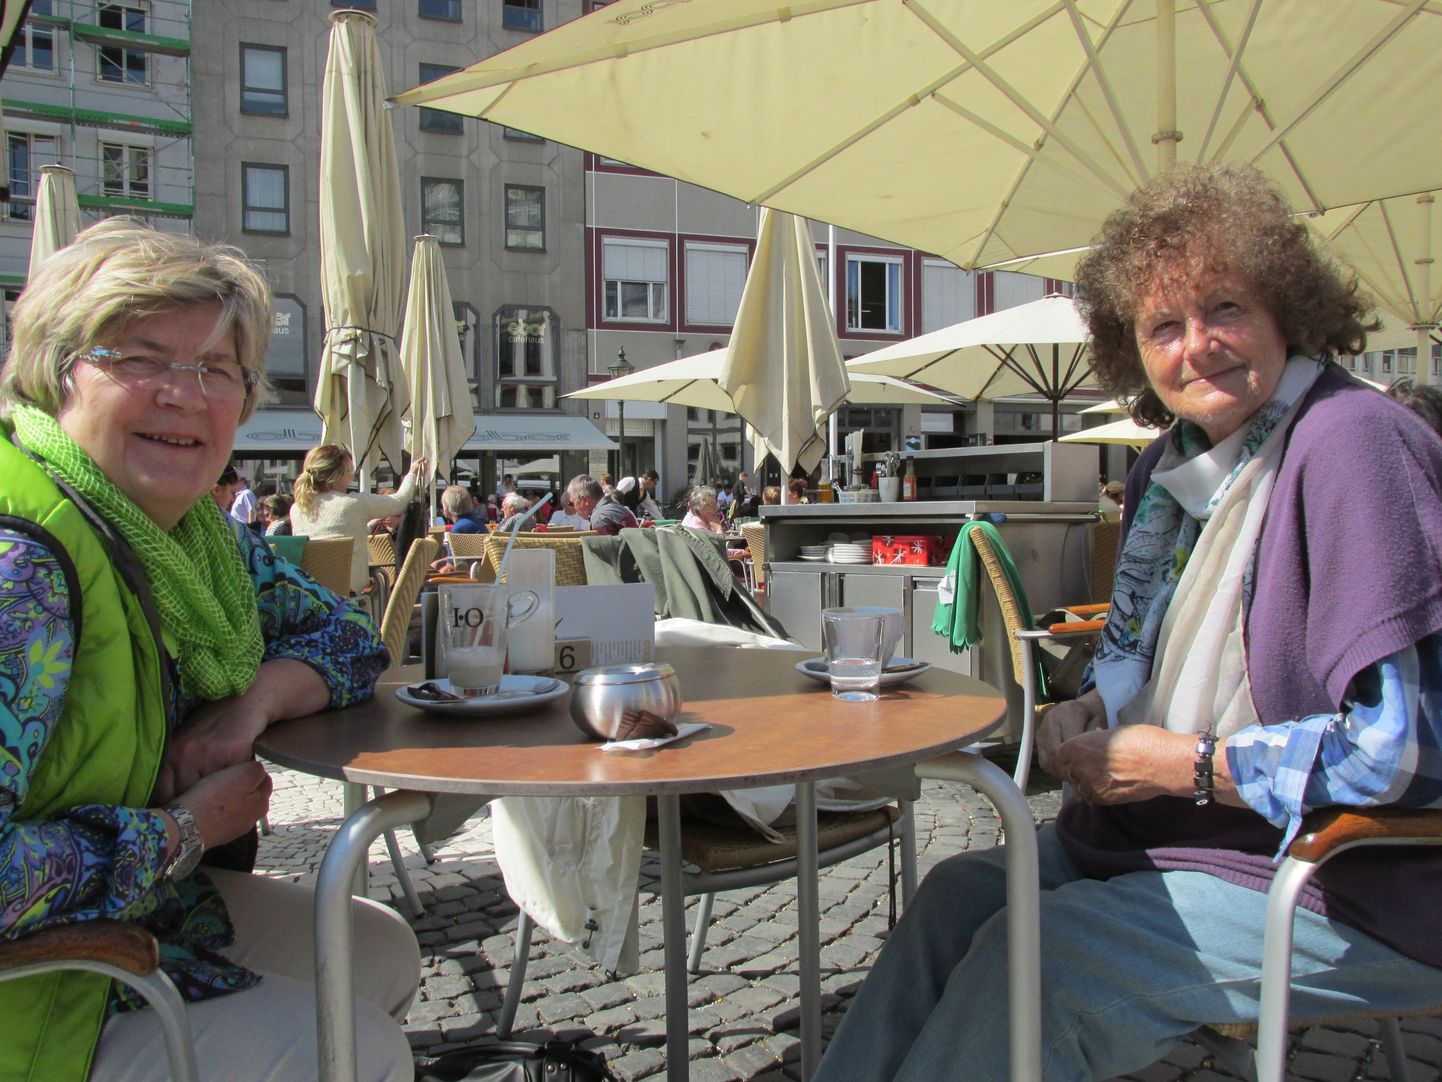 Landsbergis elav 60aastane Monika Rossmann (fotol vasakul) ja Köningsbrunnis elav 73aastane Gerda Harisch mõnulevad Augsburgi raekoja platsil Eberi kohvikus kohvi juues ja juttu ajades päikese käes. Mõlemad tunnistavad, et nende pension on üsna väike. Eriti arvestades seda, kui kalliks on kõik läinud, näiteks kommunaalmaksed. „Minu mehel on väga hea pension. Kui seda poleks, oleksime me väga hädas,” tunnistab Monika Rossmann. „Mina jäin pärast abiellumist lastega koju ning läksin alles 42aastaselt õppima ja seejärel tööle. Vaid 8 aastat töötanuna saan väga väikest pensioni.” Gerda Harisch ütleb, et kuigi ta mees on juba paar aastat surnud, siis Saksamaa seaduste järgi saab ta mehe pensioni edasi. Tänu sellele saab ta ka paremini hakkama. Kuuldes, et Eesti keskmine pension jääb 300–400 euro vahele, ei suuda naised seda uskuda. „Seda on kindlasti liiga vähe,” leiab Rossmann.
Sõbrannad arvavad, et Saksamaal pakutakse pensionäridele päris palju tegevusi. Näiteks kirikutes on seenioride pärastlõunad, kus saab kohvi juua ja teistega juttu ajada või pakutakse välja ühiseid jalutuskäike. „Meie kohtume omavahel ja teeme aiatöid,” lausub Gerda Harisch. „Korra nädalas sõidame Münchenisse, kus meie sõbrannad elavad.” Königsbrunnis uues Mühle kohvikus kohtuvad nad tihti, vähemalt paar korda nädalas, kuid sõidavad vahel ka Augsburgi.